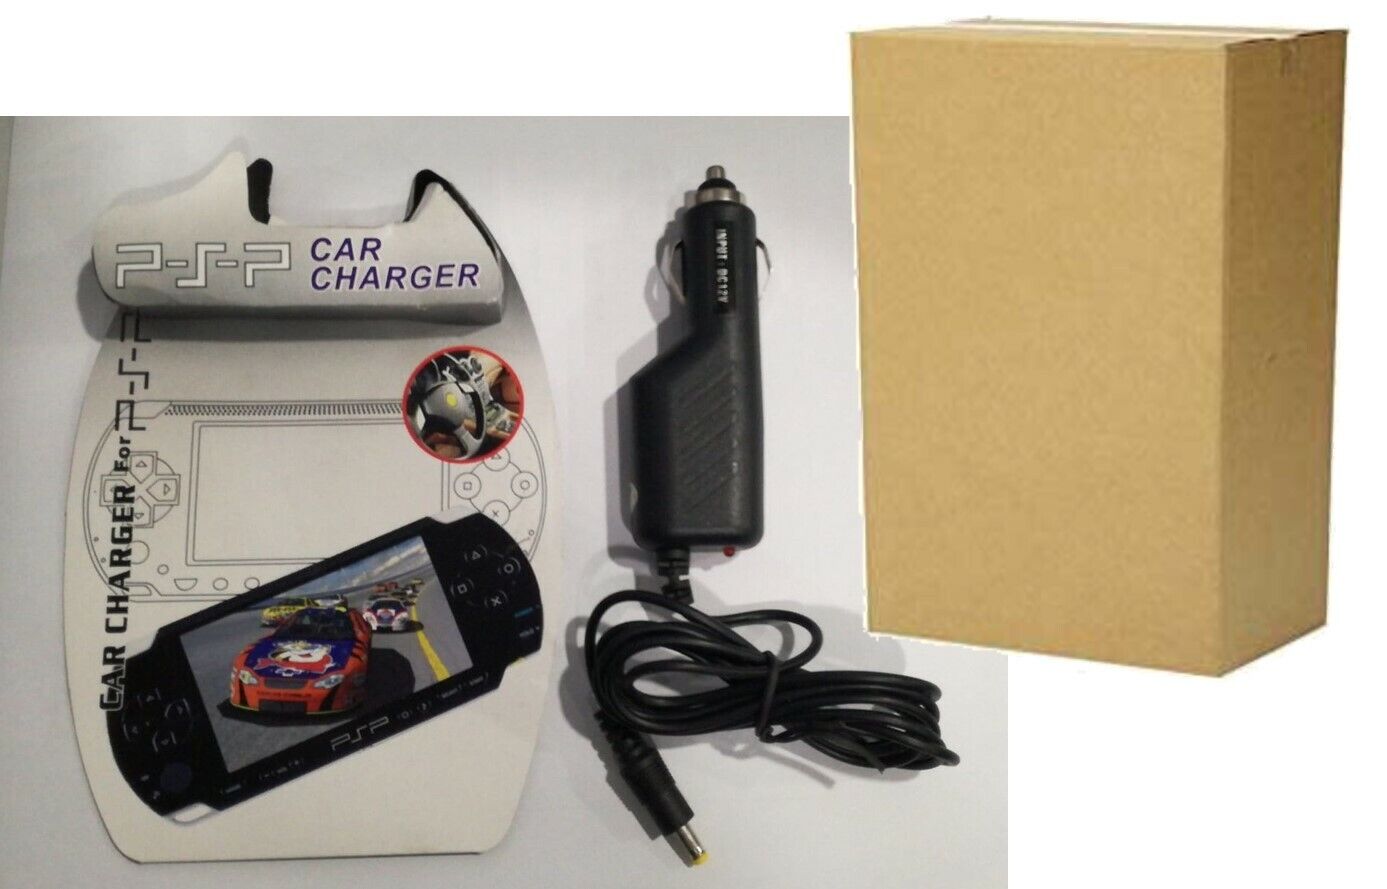 caricatore per auto con uscita per PSP fornito in scatola neutro